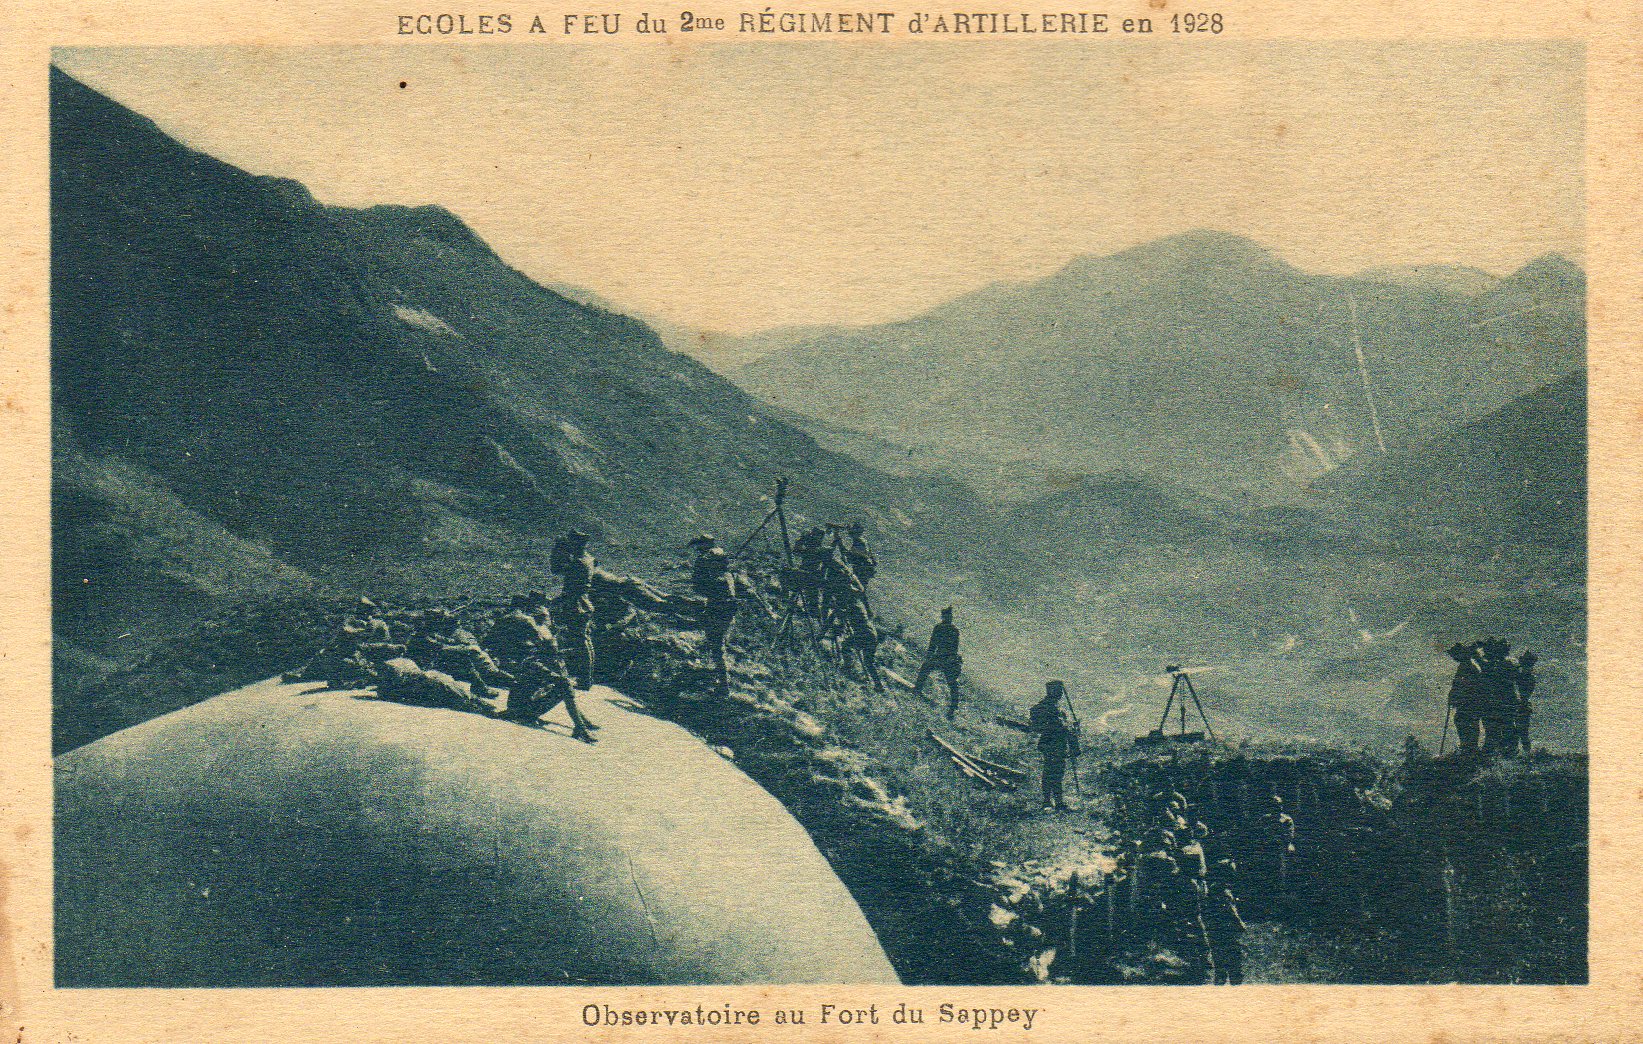 Ligne Maginot - SAPEY - (Ouvrage d'artillerie) - Ecole à feu du 2 RA en 1928 sur les dessus du fort du Sazpey